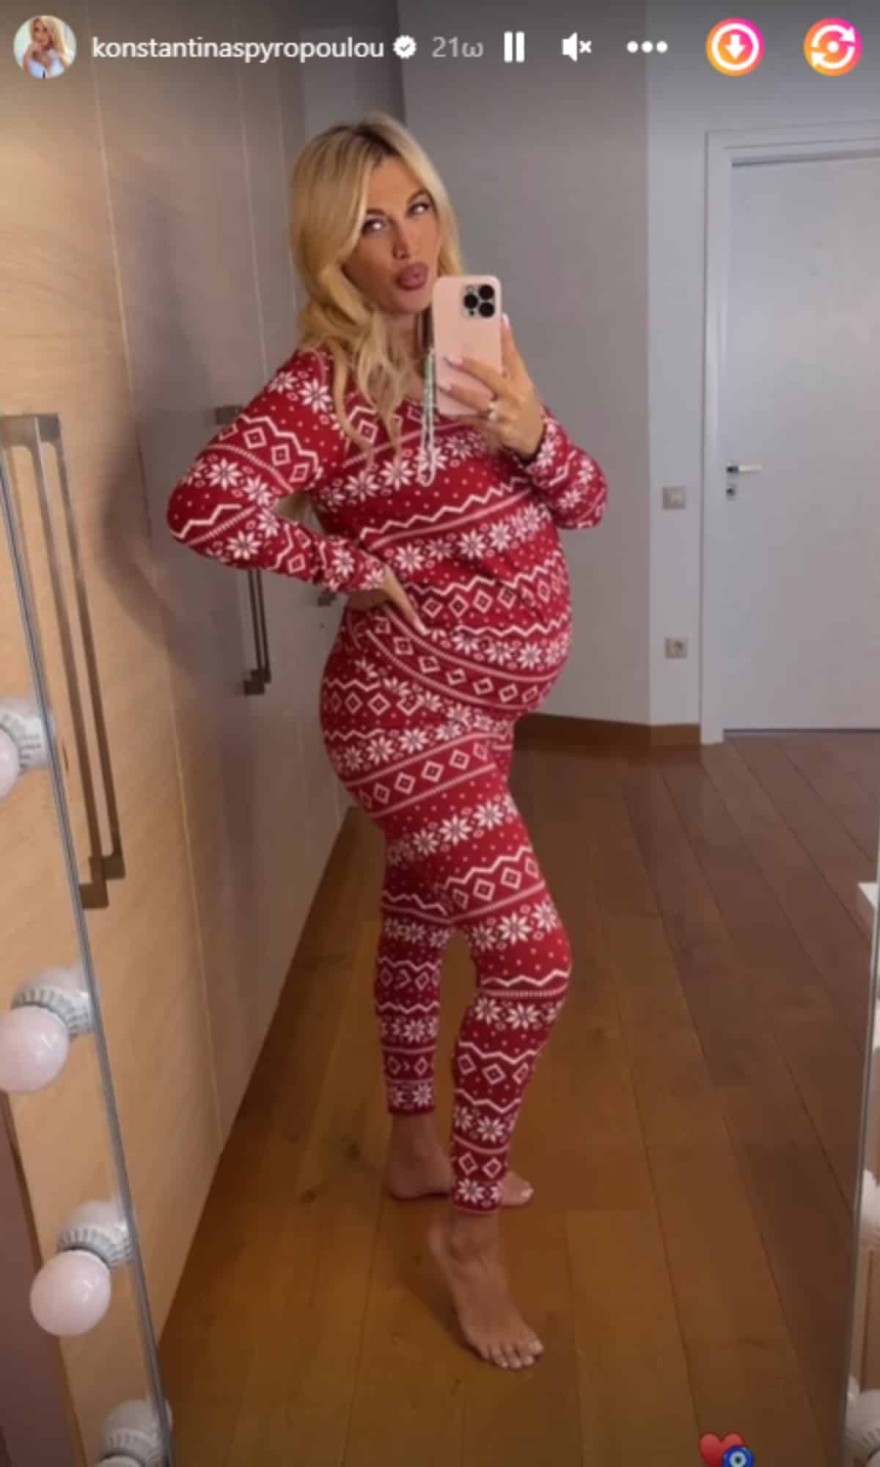 Η φωτογραφία της εγκυμονούσας Κωνσταντίνας Σπυροπούλου στον καθρέφτη 